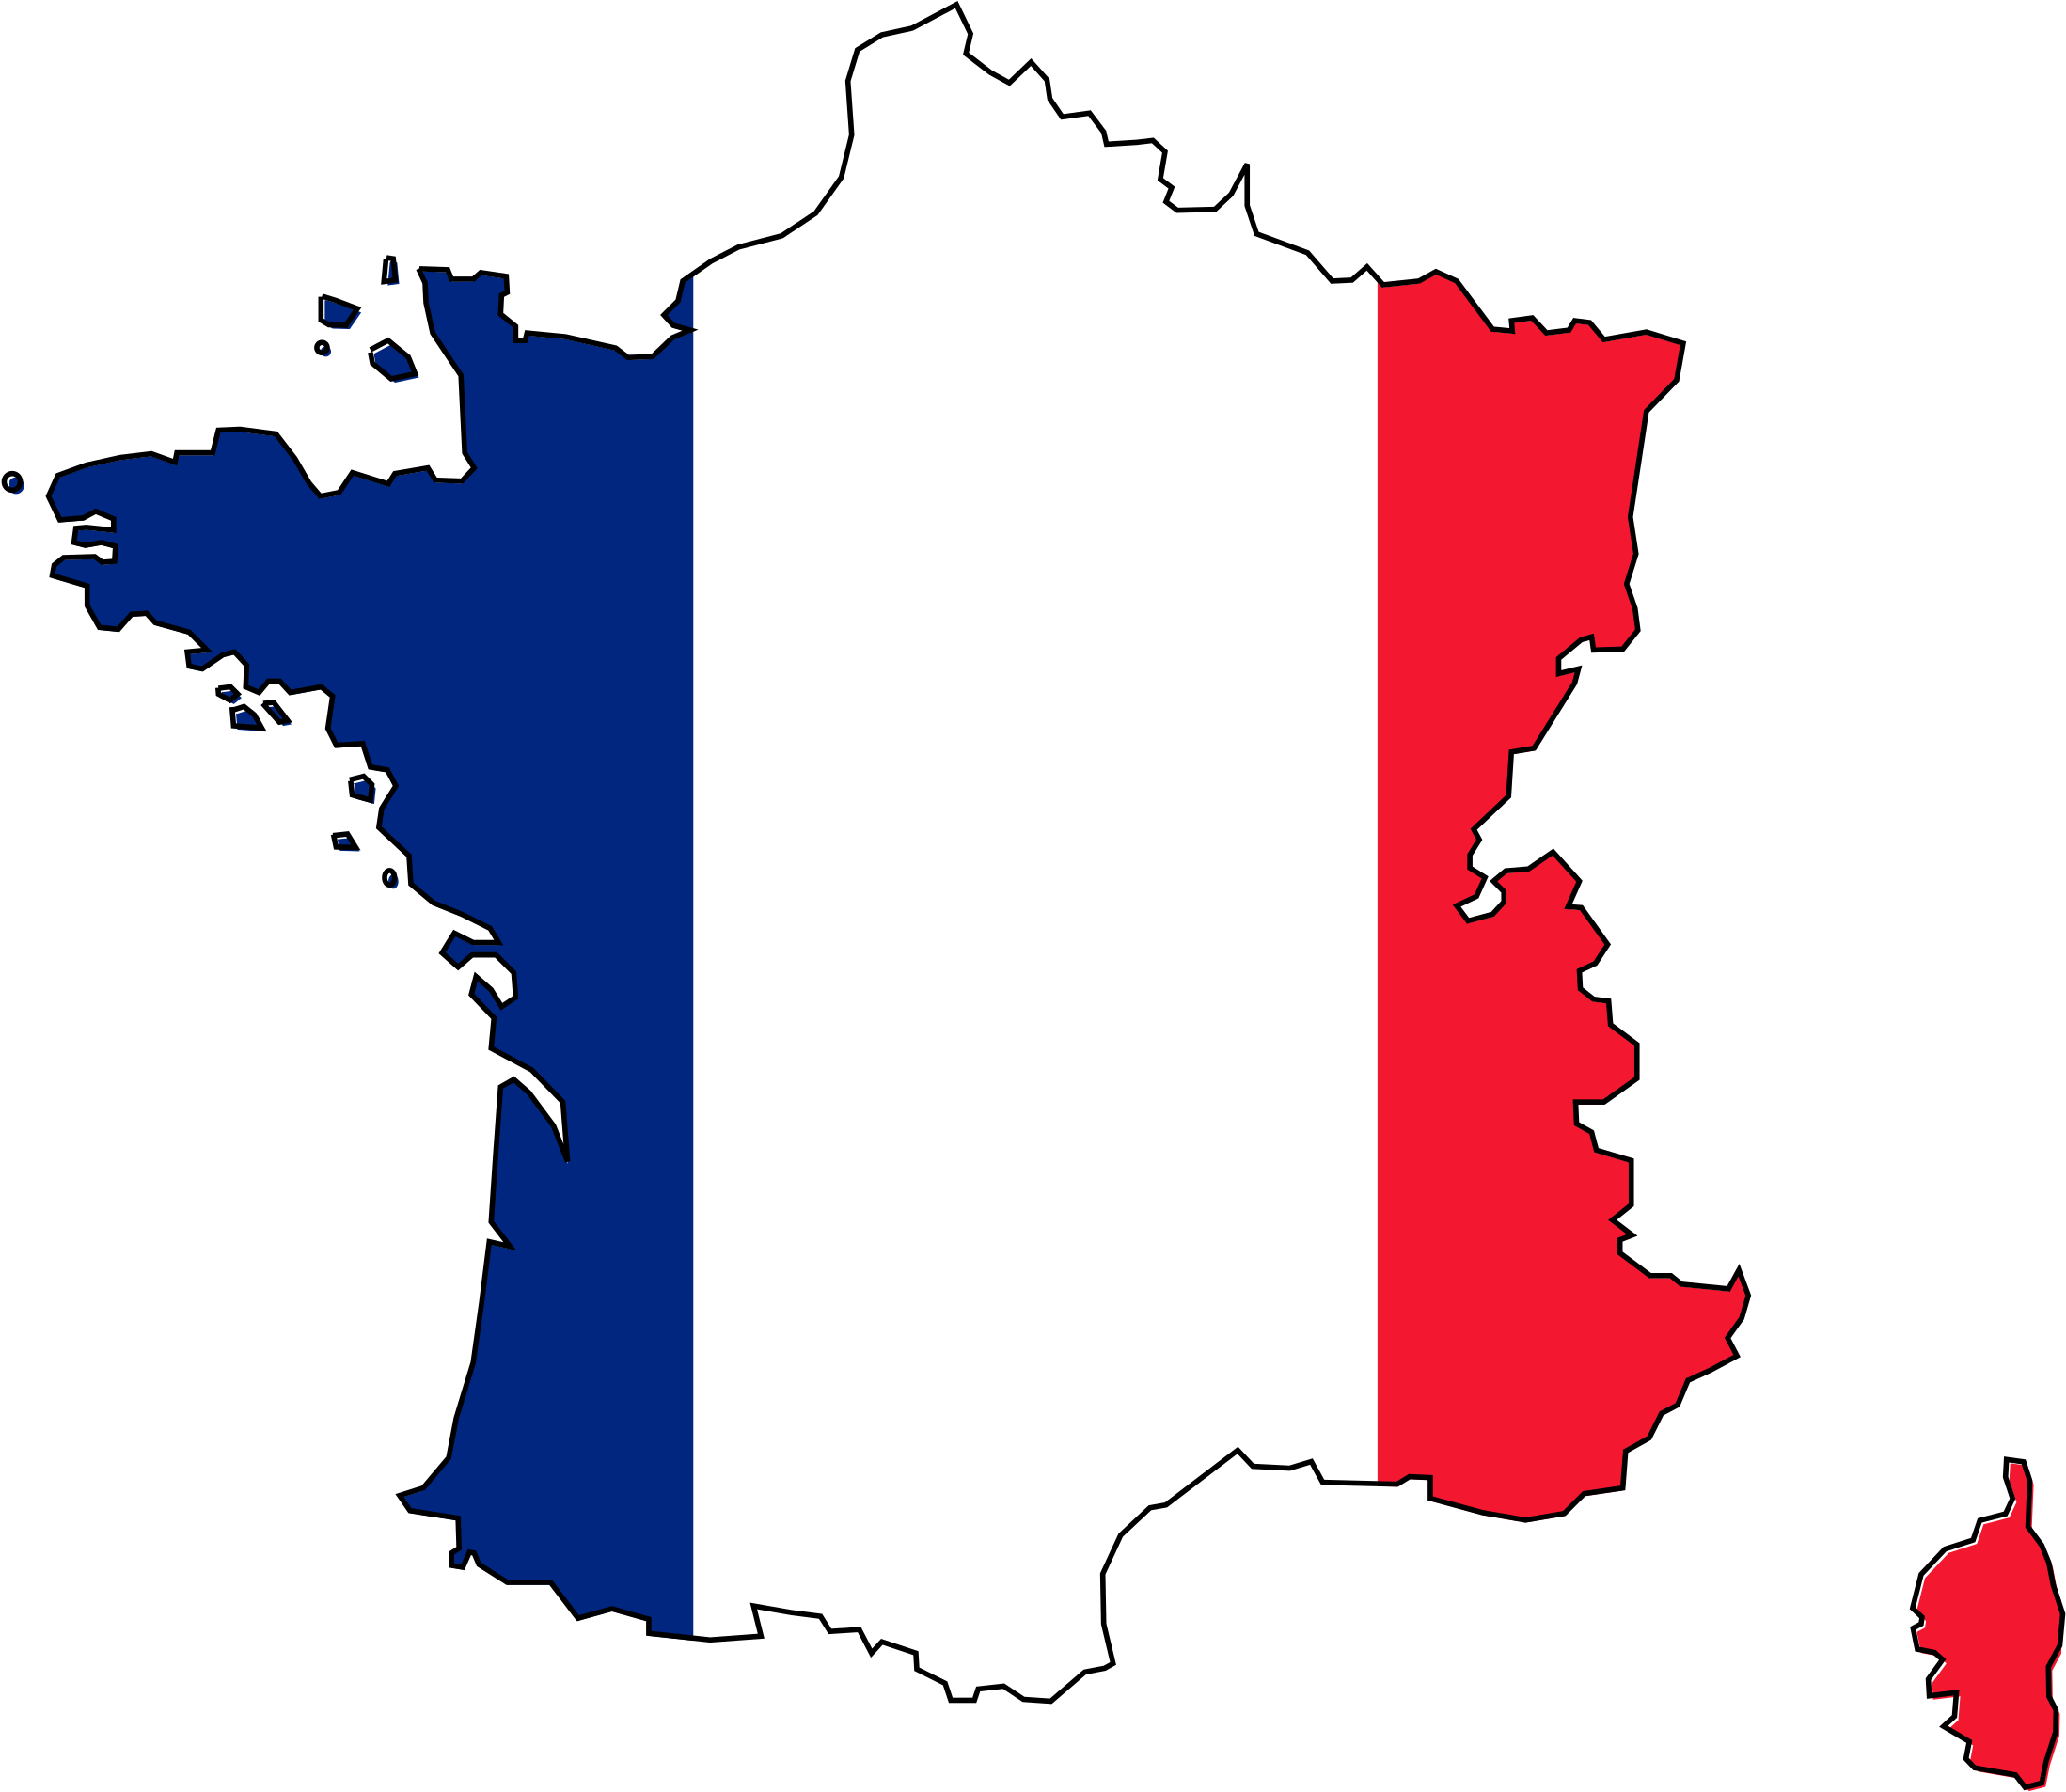 Fr страна. Карта Франции на карте. Франция флаг карта флаг карта. Карта Франции с флагом. Флаг Франции 1936.